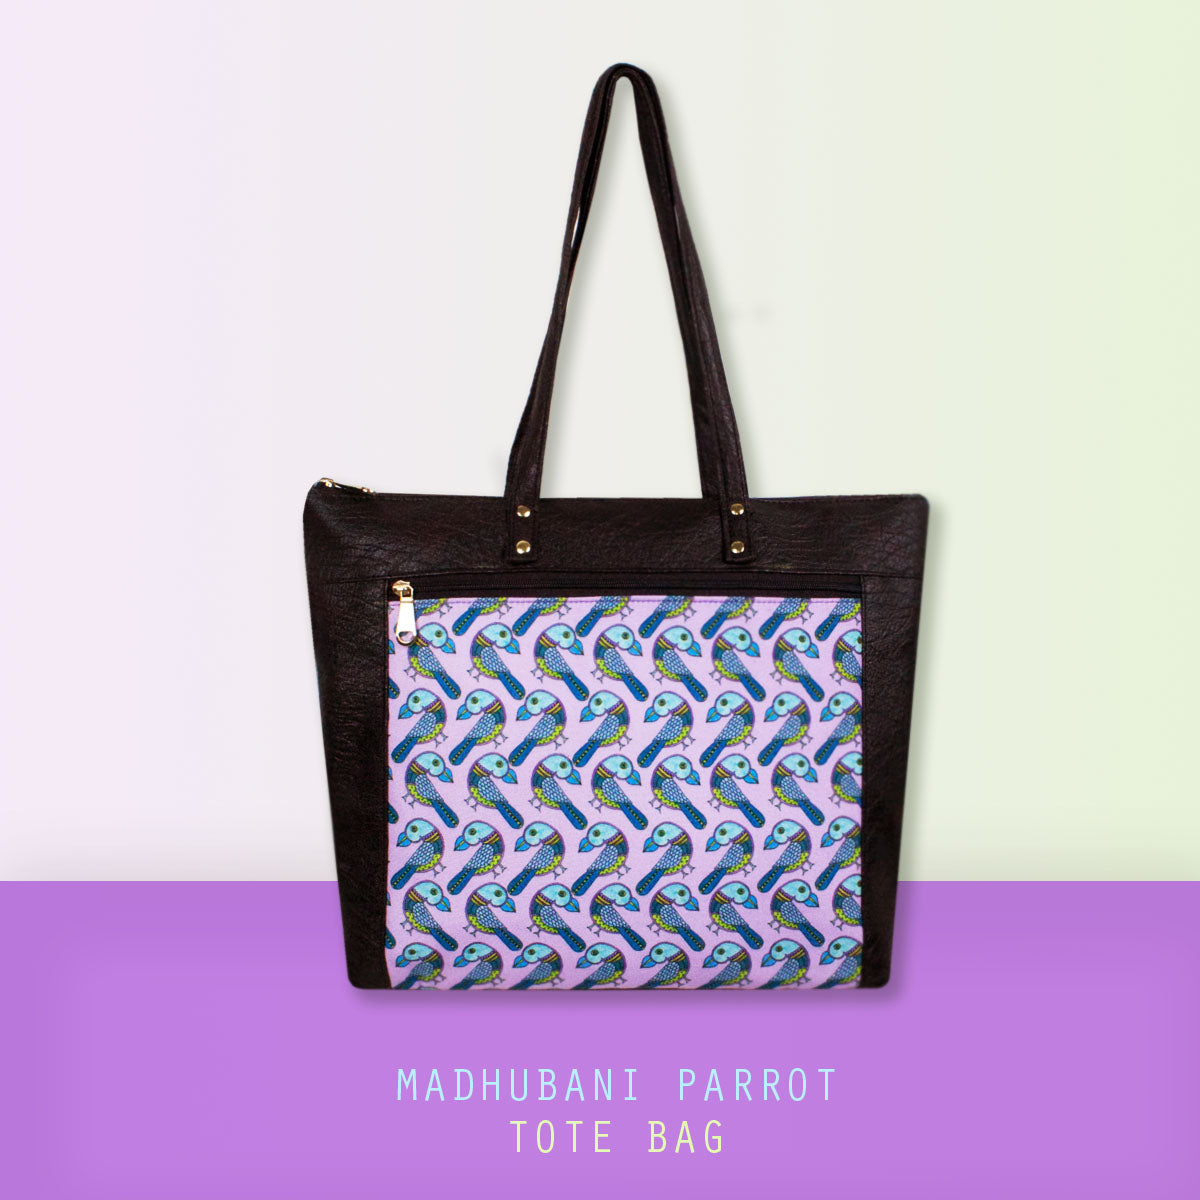 Madhubani Parrot Tote Bag